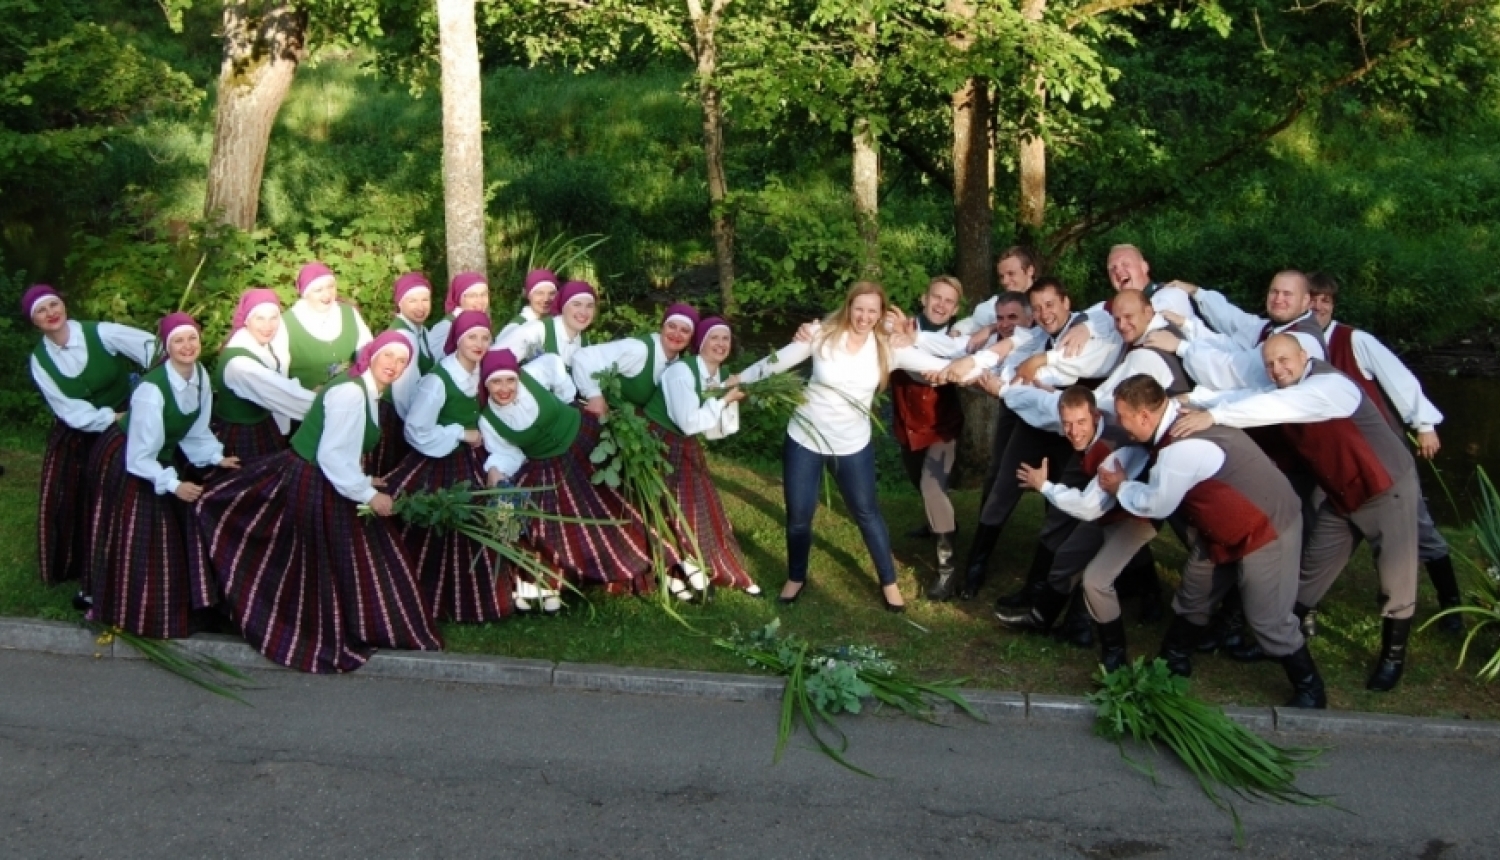 Jaunsvirlaukas pagasta vidējās paaudzes deju kolektīvs "Svirlauka"